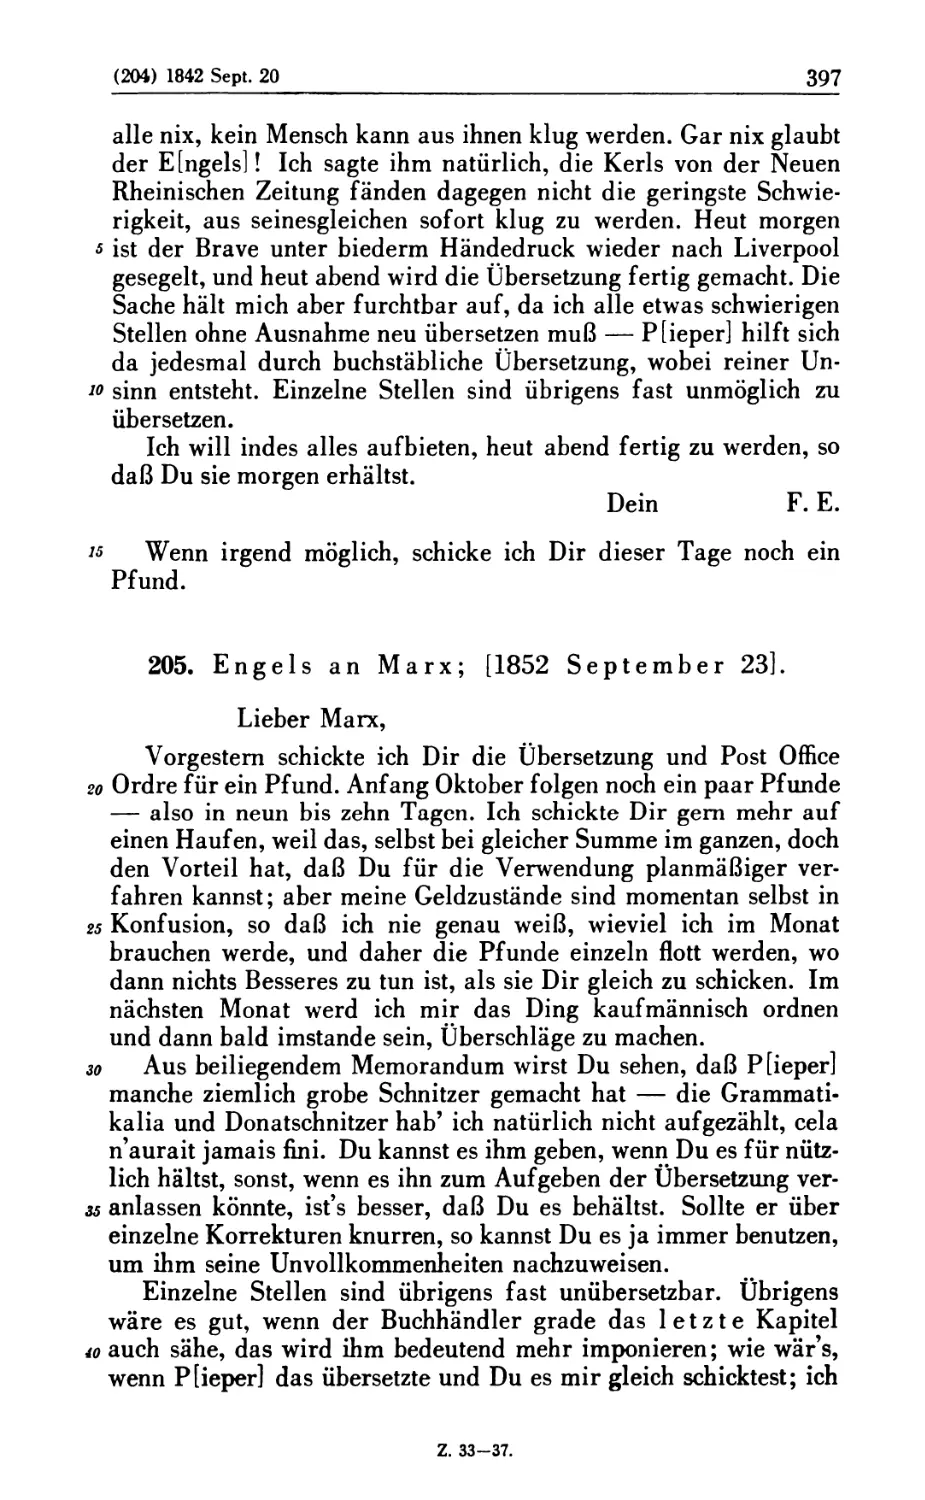 205. Engels an Marx; [1852 September 23]